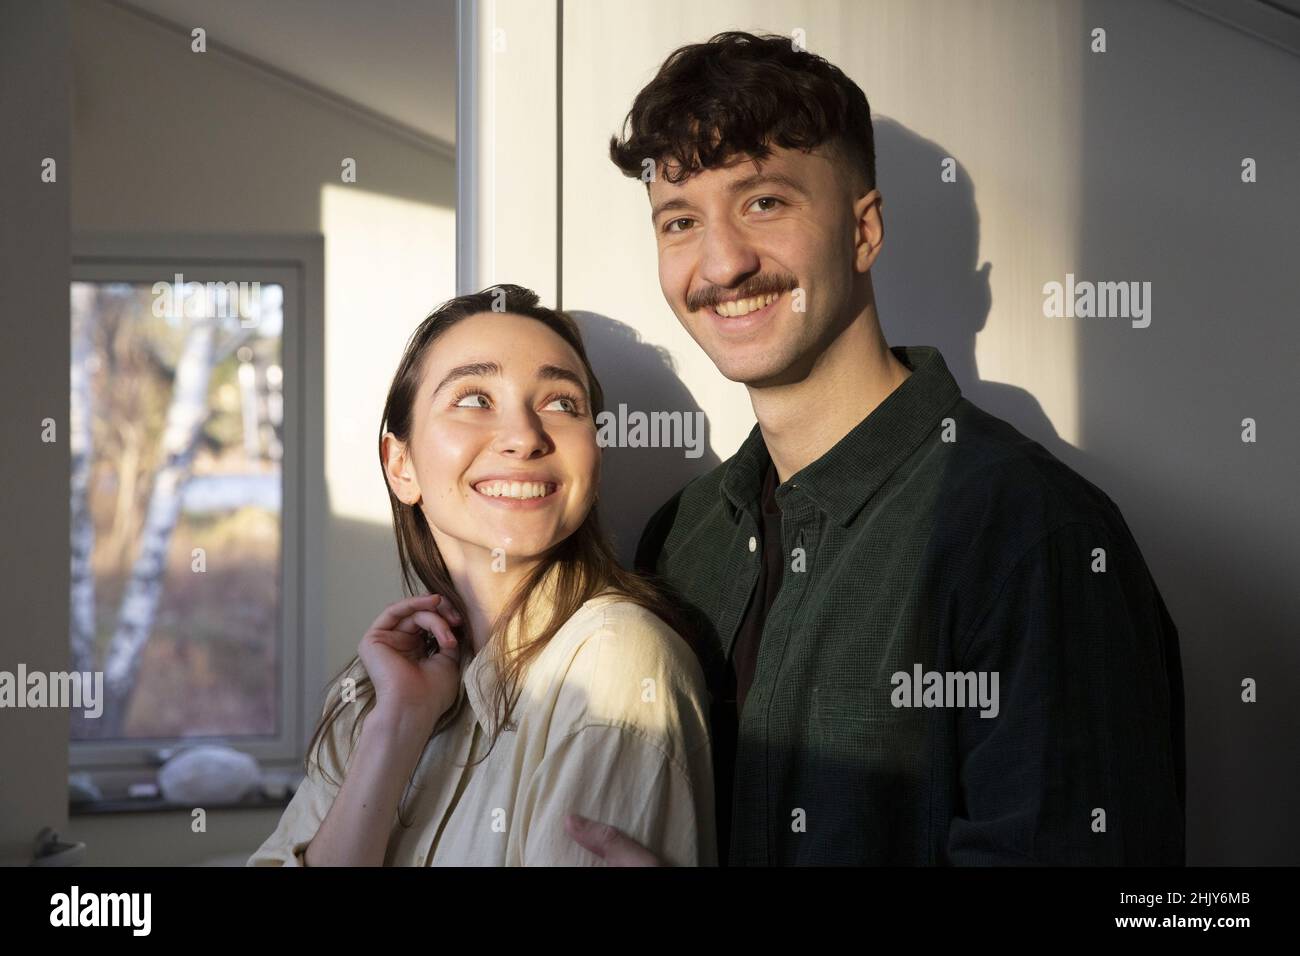 Portrait d'un homme souriant debout avec une petite amie à la maison Banque D'Images